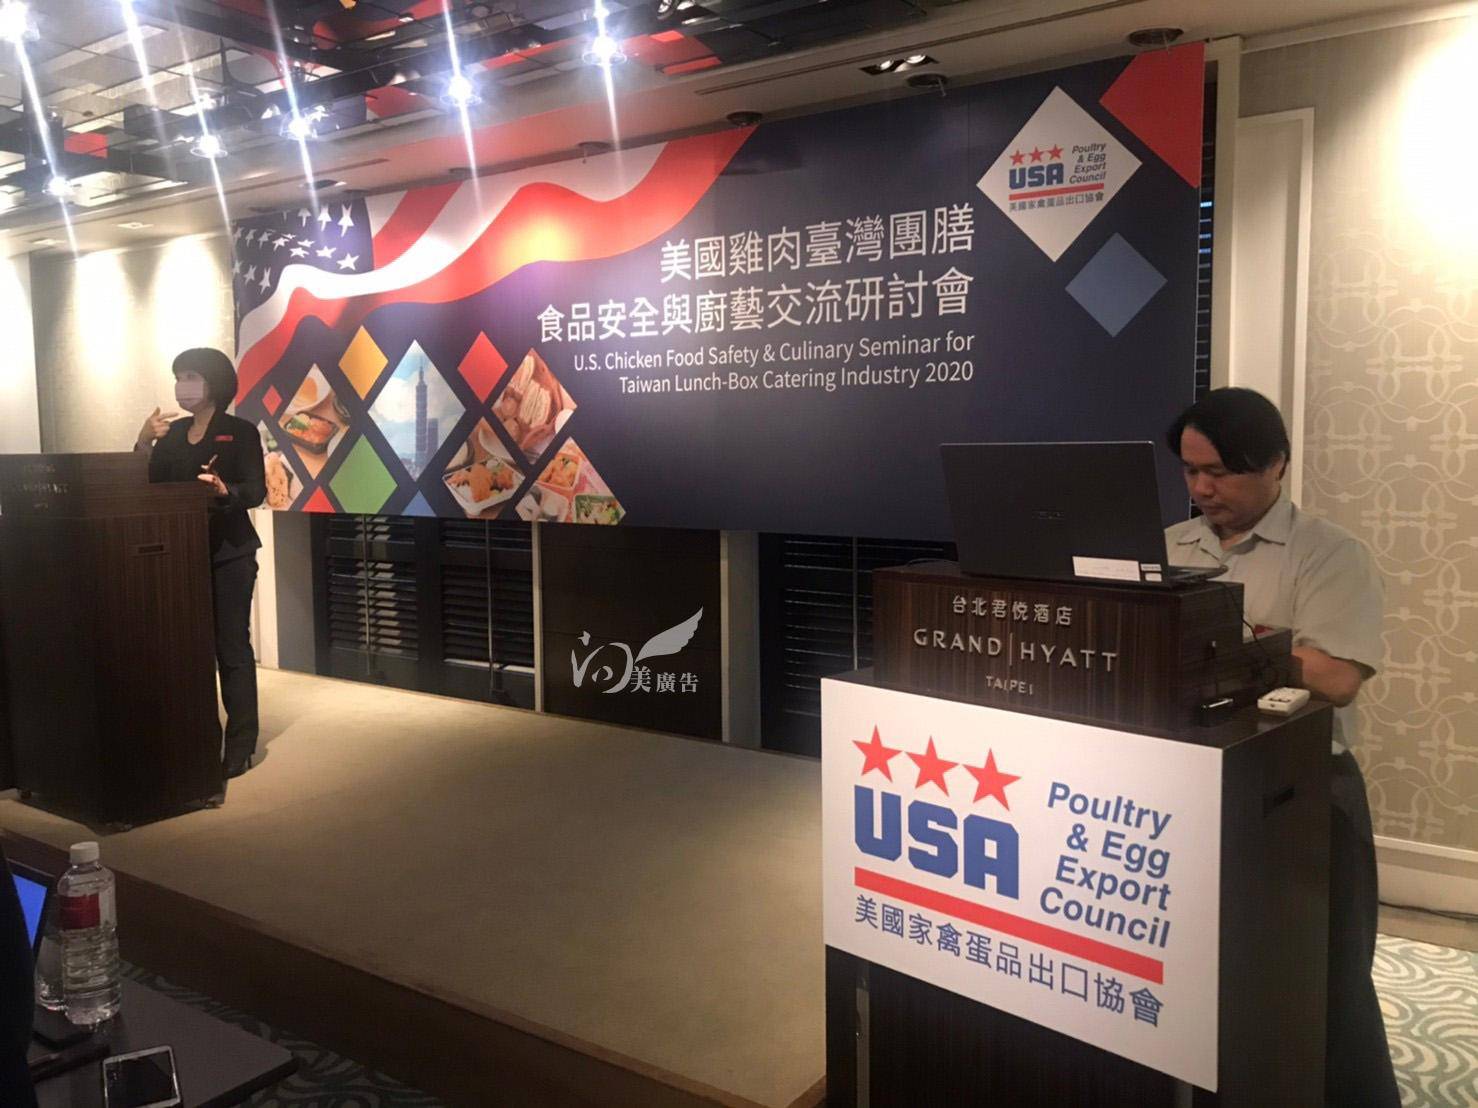 美國雞肉2020年臺灣團膳食品安全與廚藝交流研討會-大圖輸出